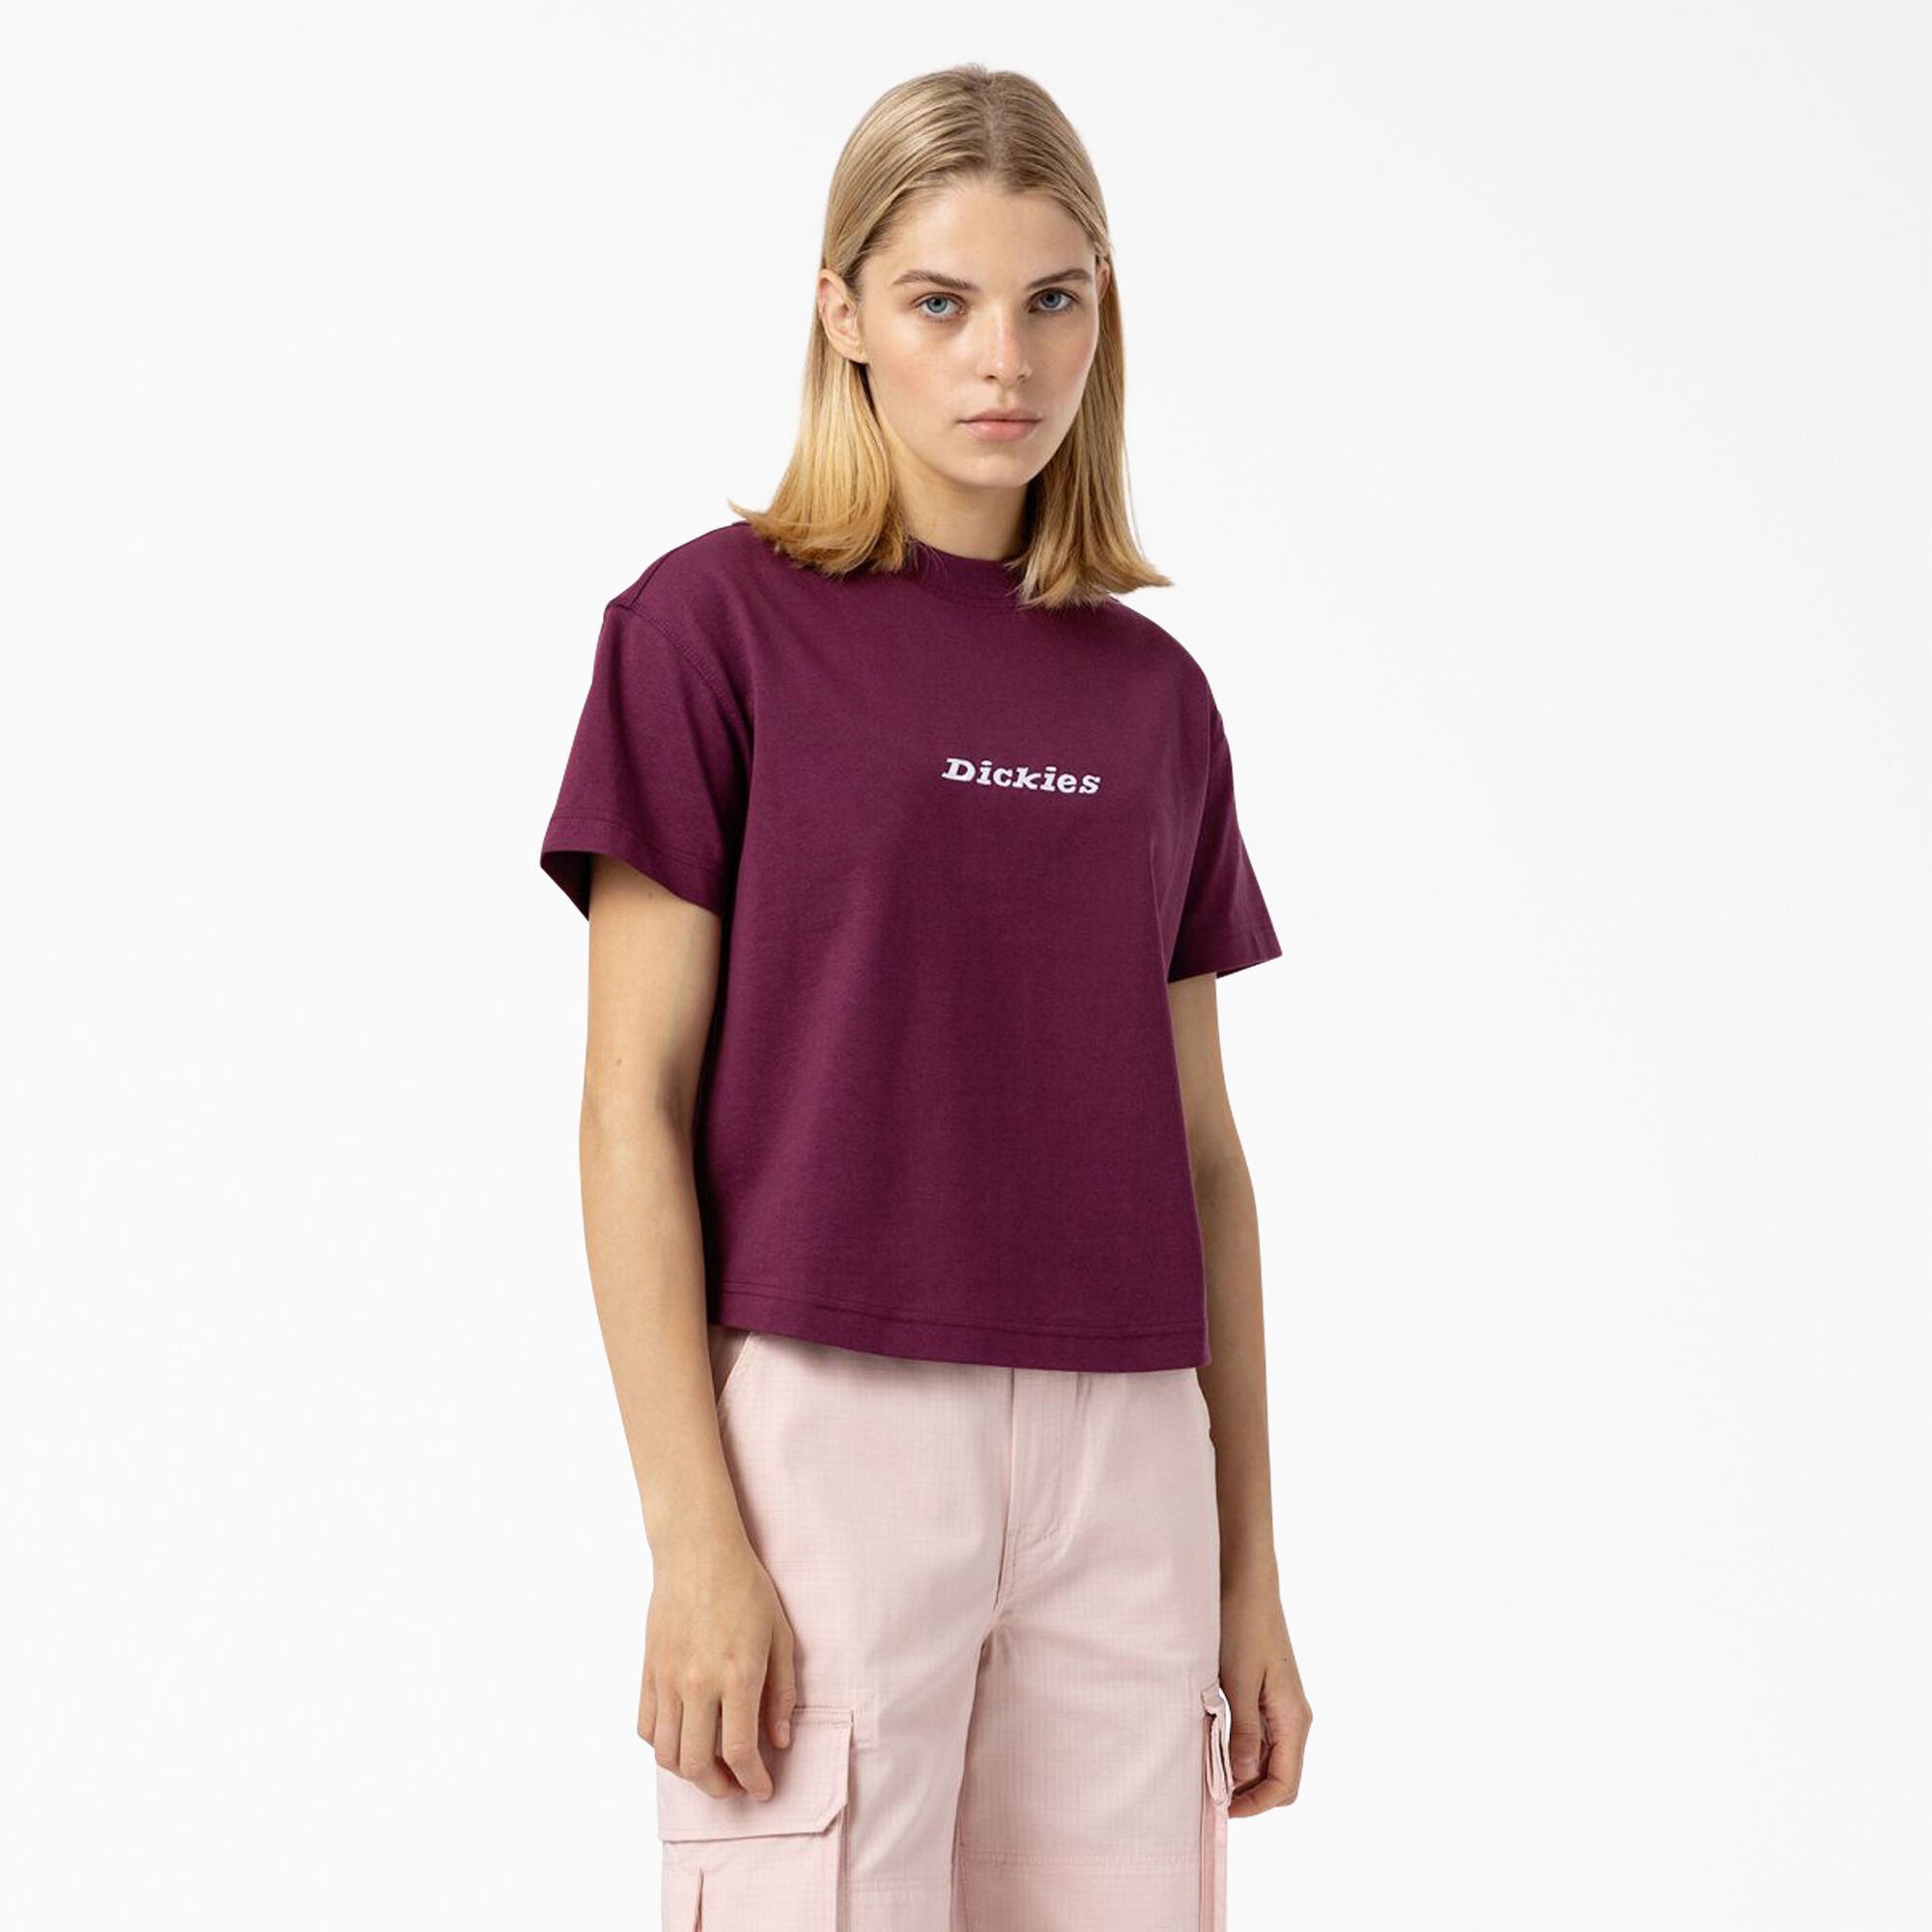 discount 71% WOMEN FASHION Shirts & T-shirts Shirt Print Purple S Bershka Shirt 